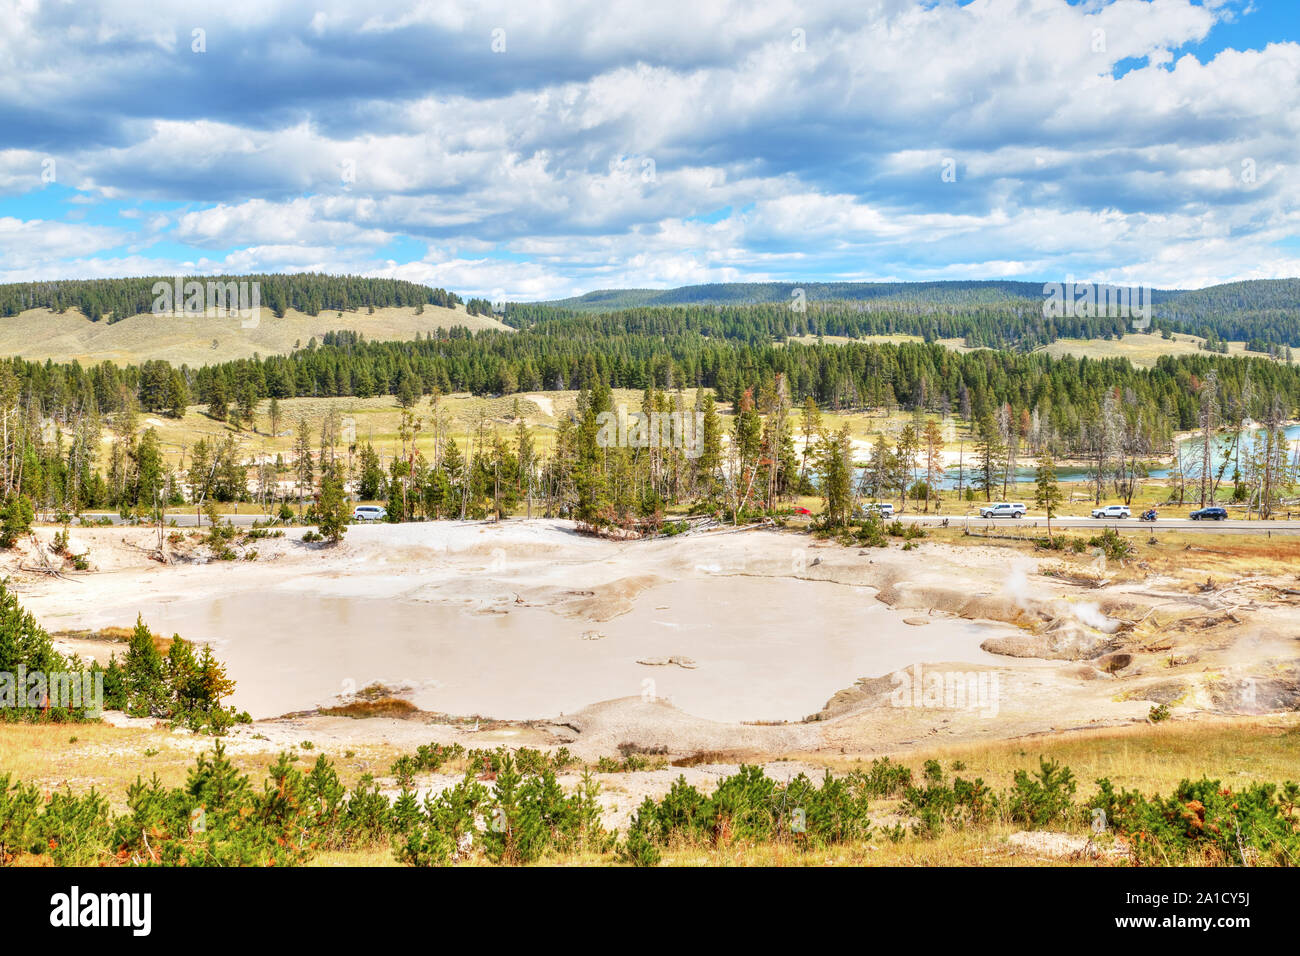 Geyser de boue, une fois qu'un geyser régulièrement dans une épaisse forêt, a maintenant évolué pour devenir un grand, ouvert, piscine boueuse au volcan de boue dans le parc national de Yellowstone Banque D'Images